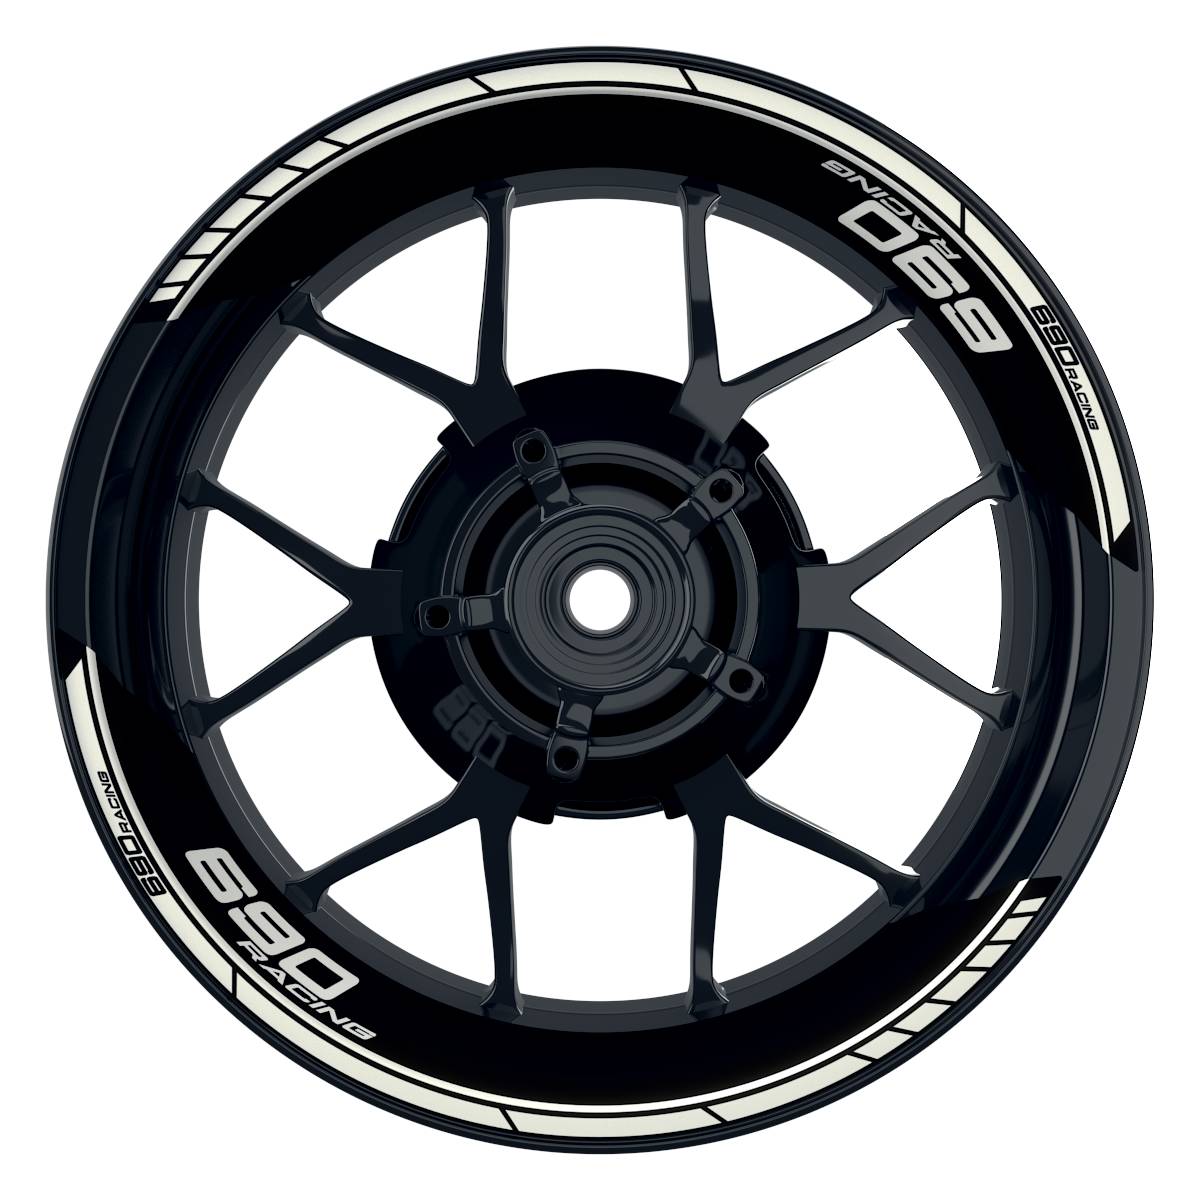 KTM Racing 690 Clean schwarz weiss Frontansicht